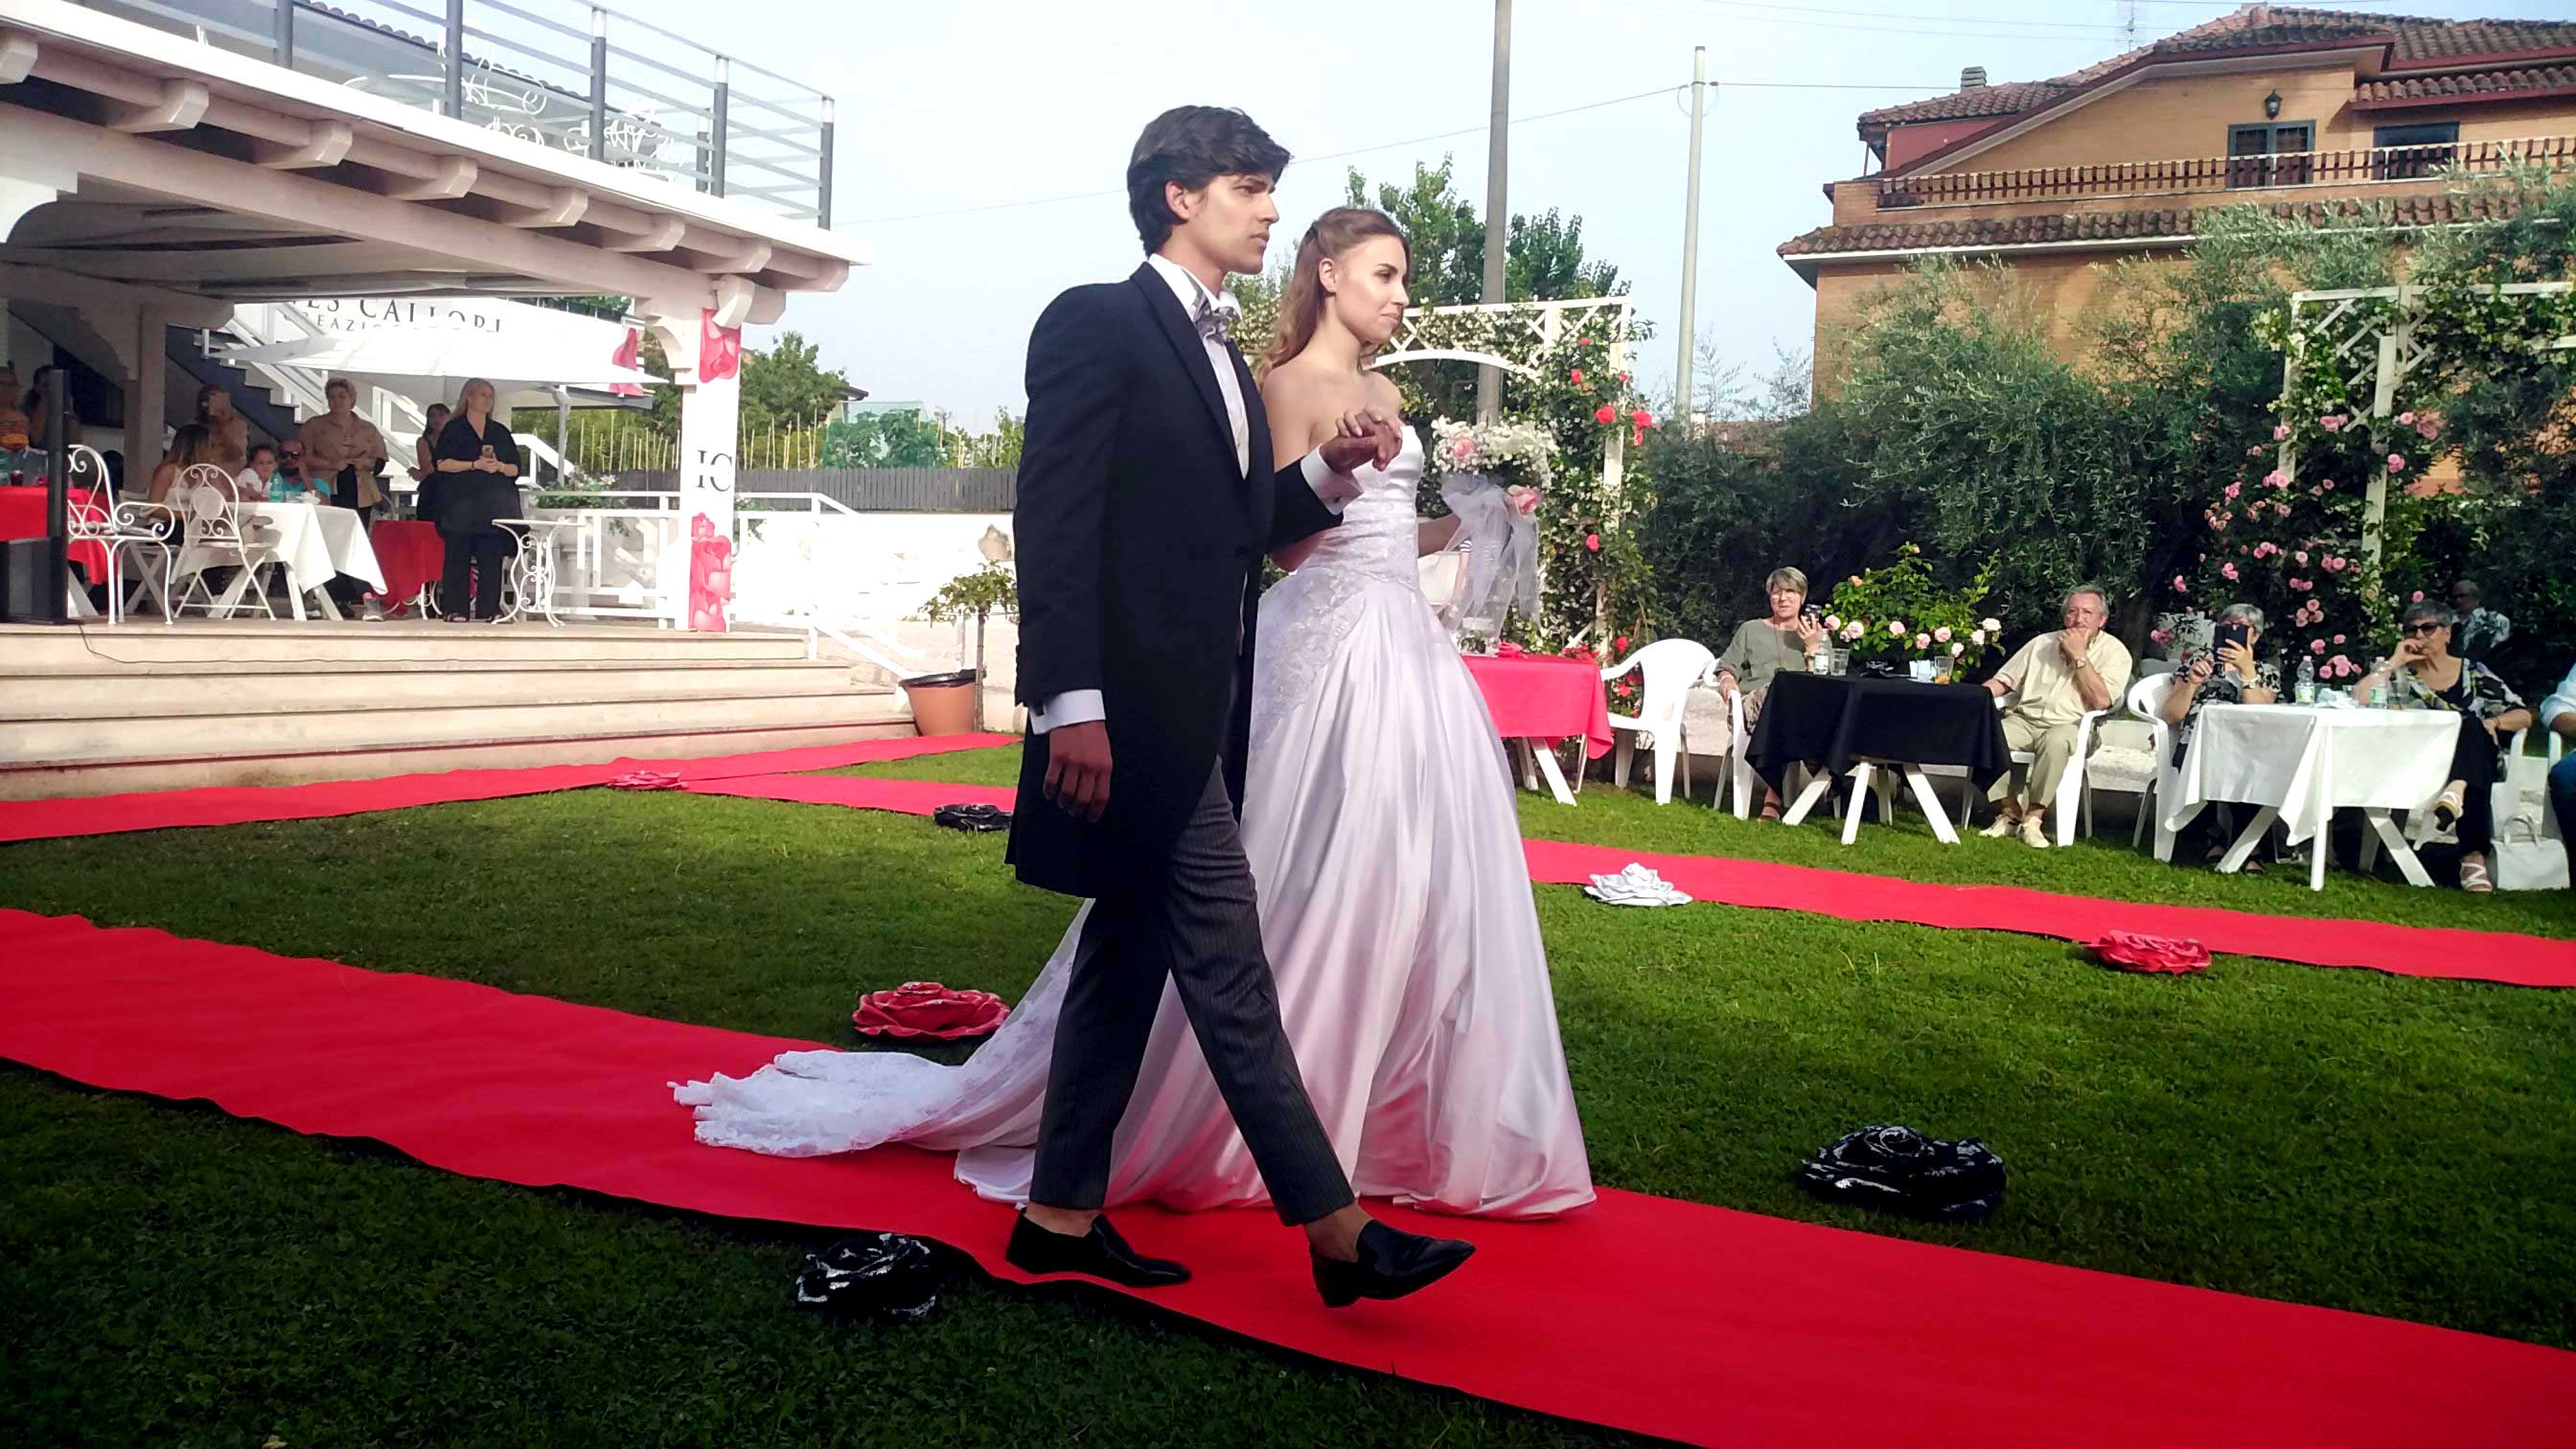 Abiti sposo : Eleonora Giamberduca presenta un abito da matrimonio per uomo. Location villa Aurora - Frascati. Vestiti su misura Elins moda a Roma foto6